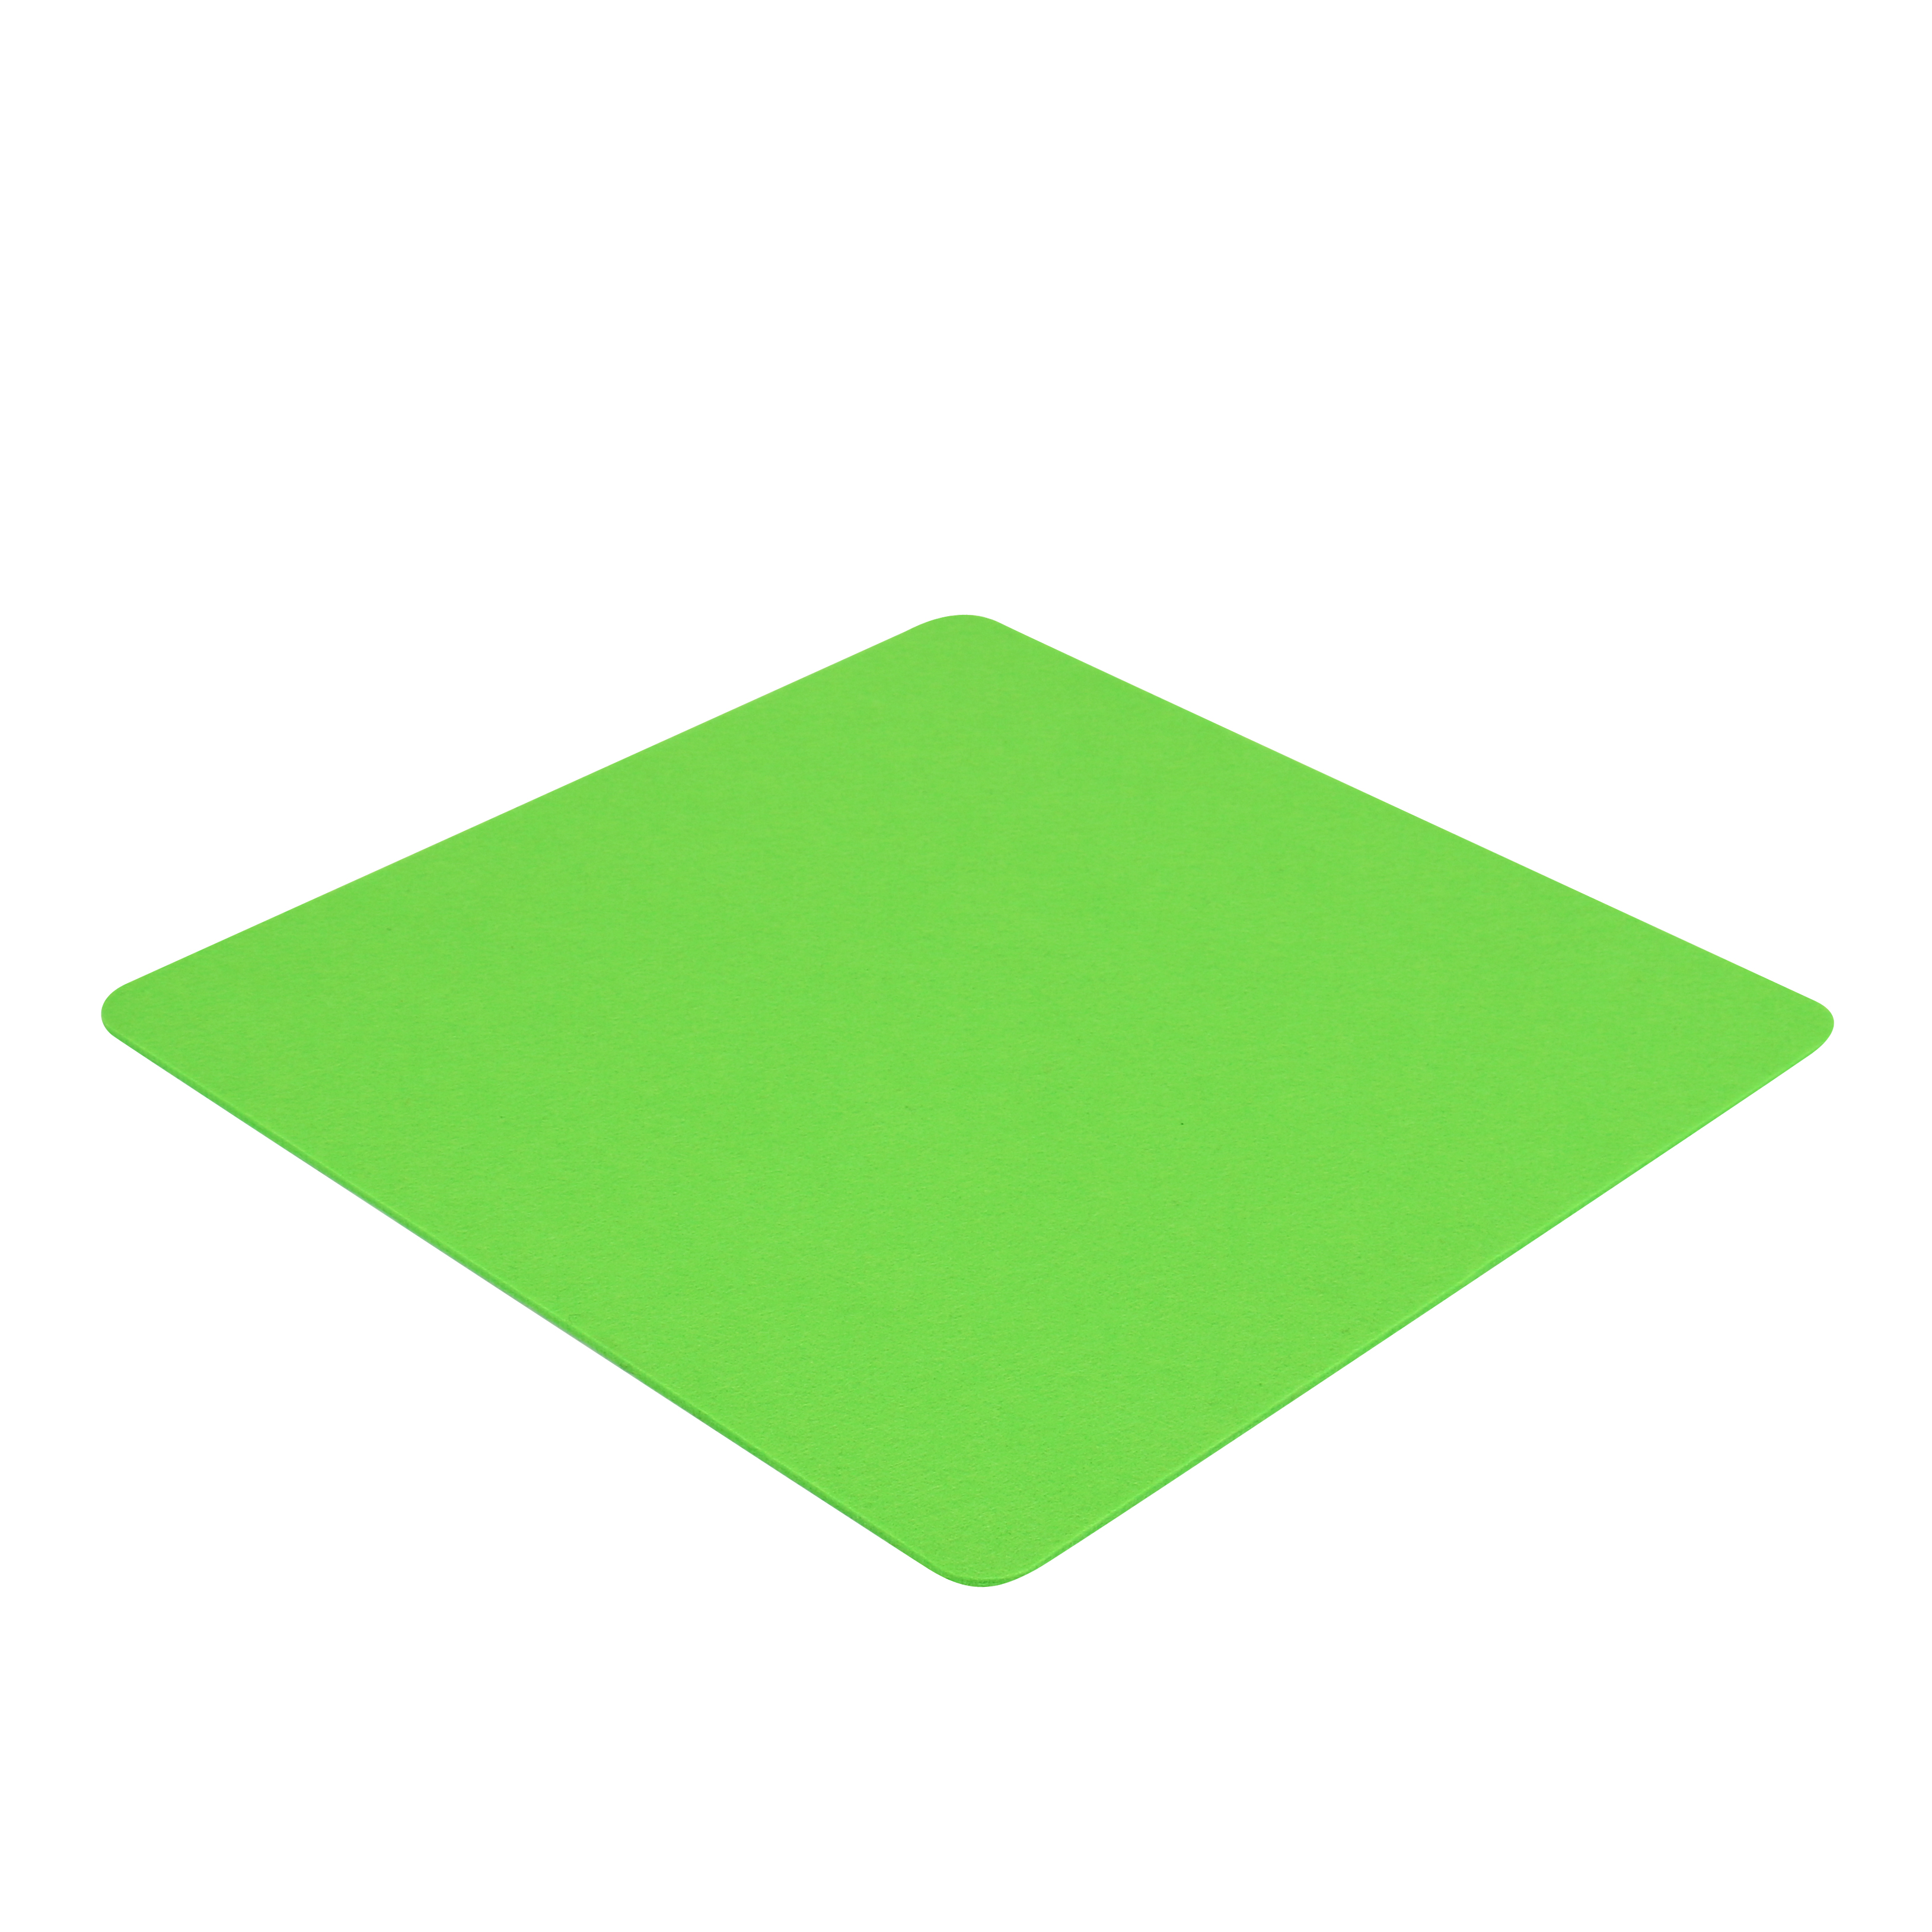 Einseitig z.B. FIlzauflage - 40 4mm 7EVEN (Green) Cube cm für Apfel-Grün Auflage Hocker x 40 Filz